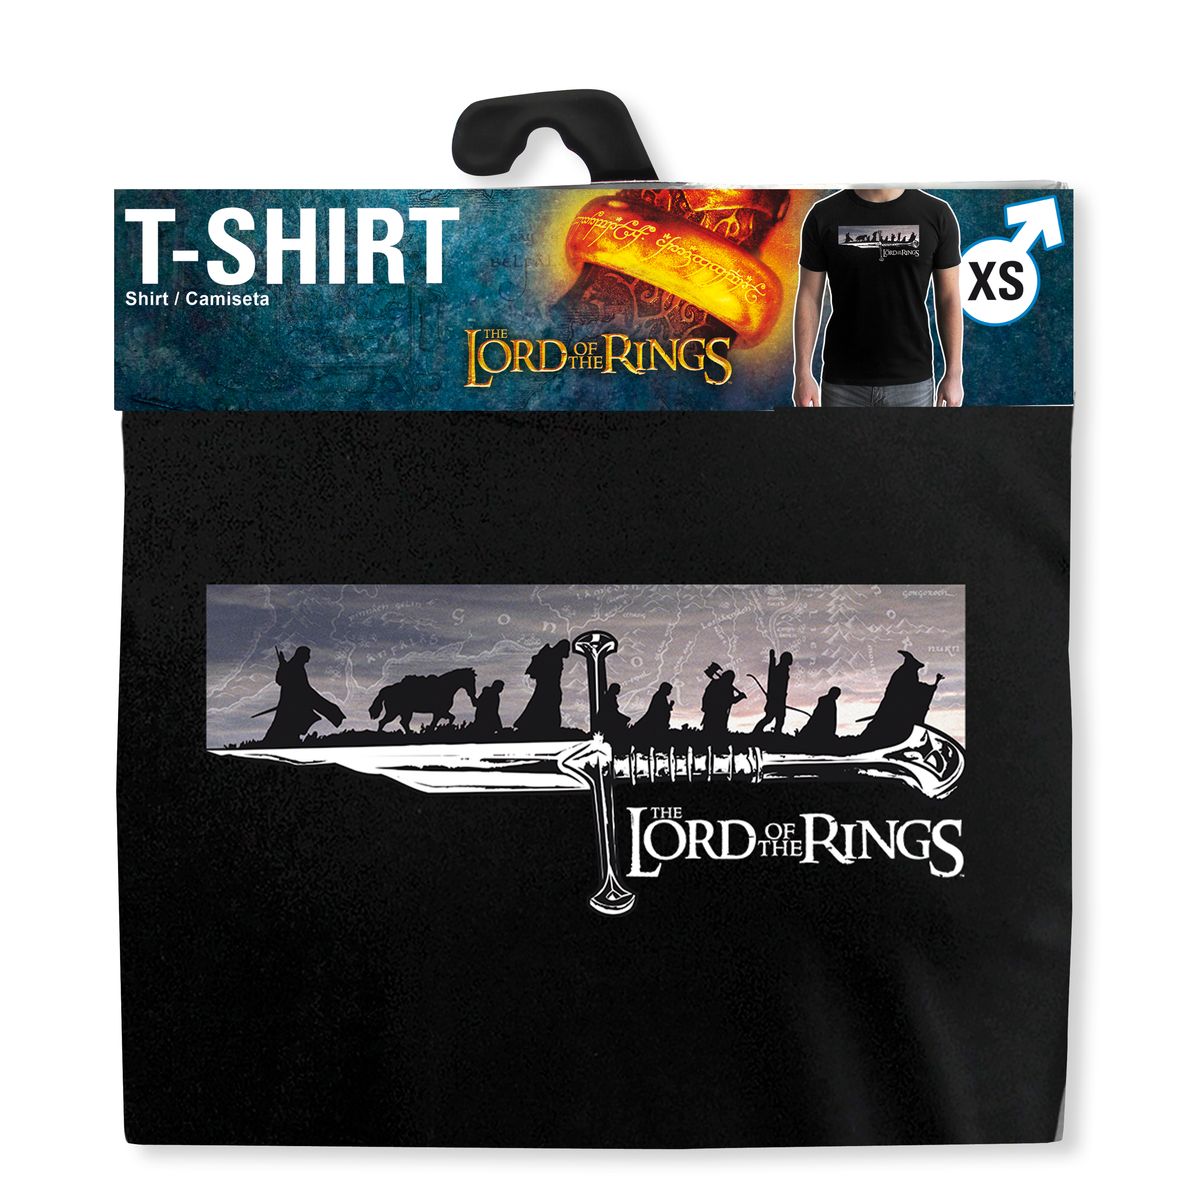 Herr der Ringe - The Fellowship - T-Shirt